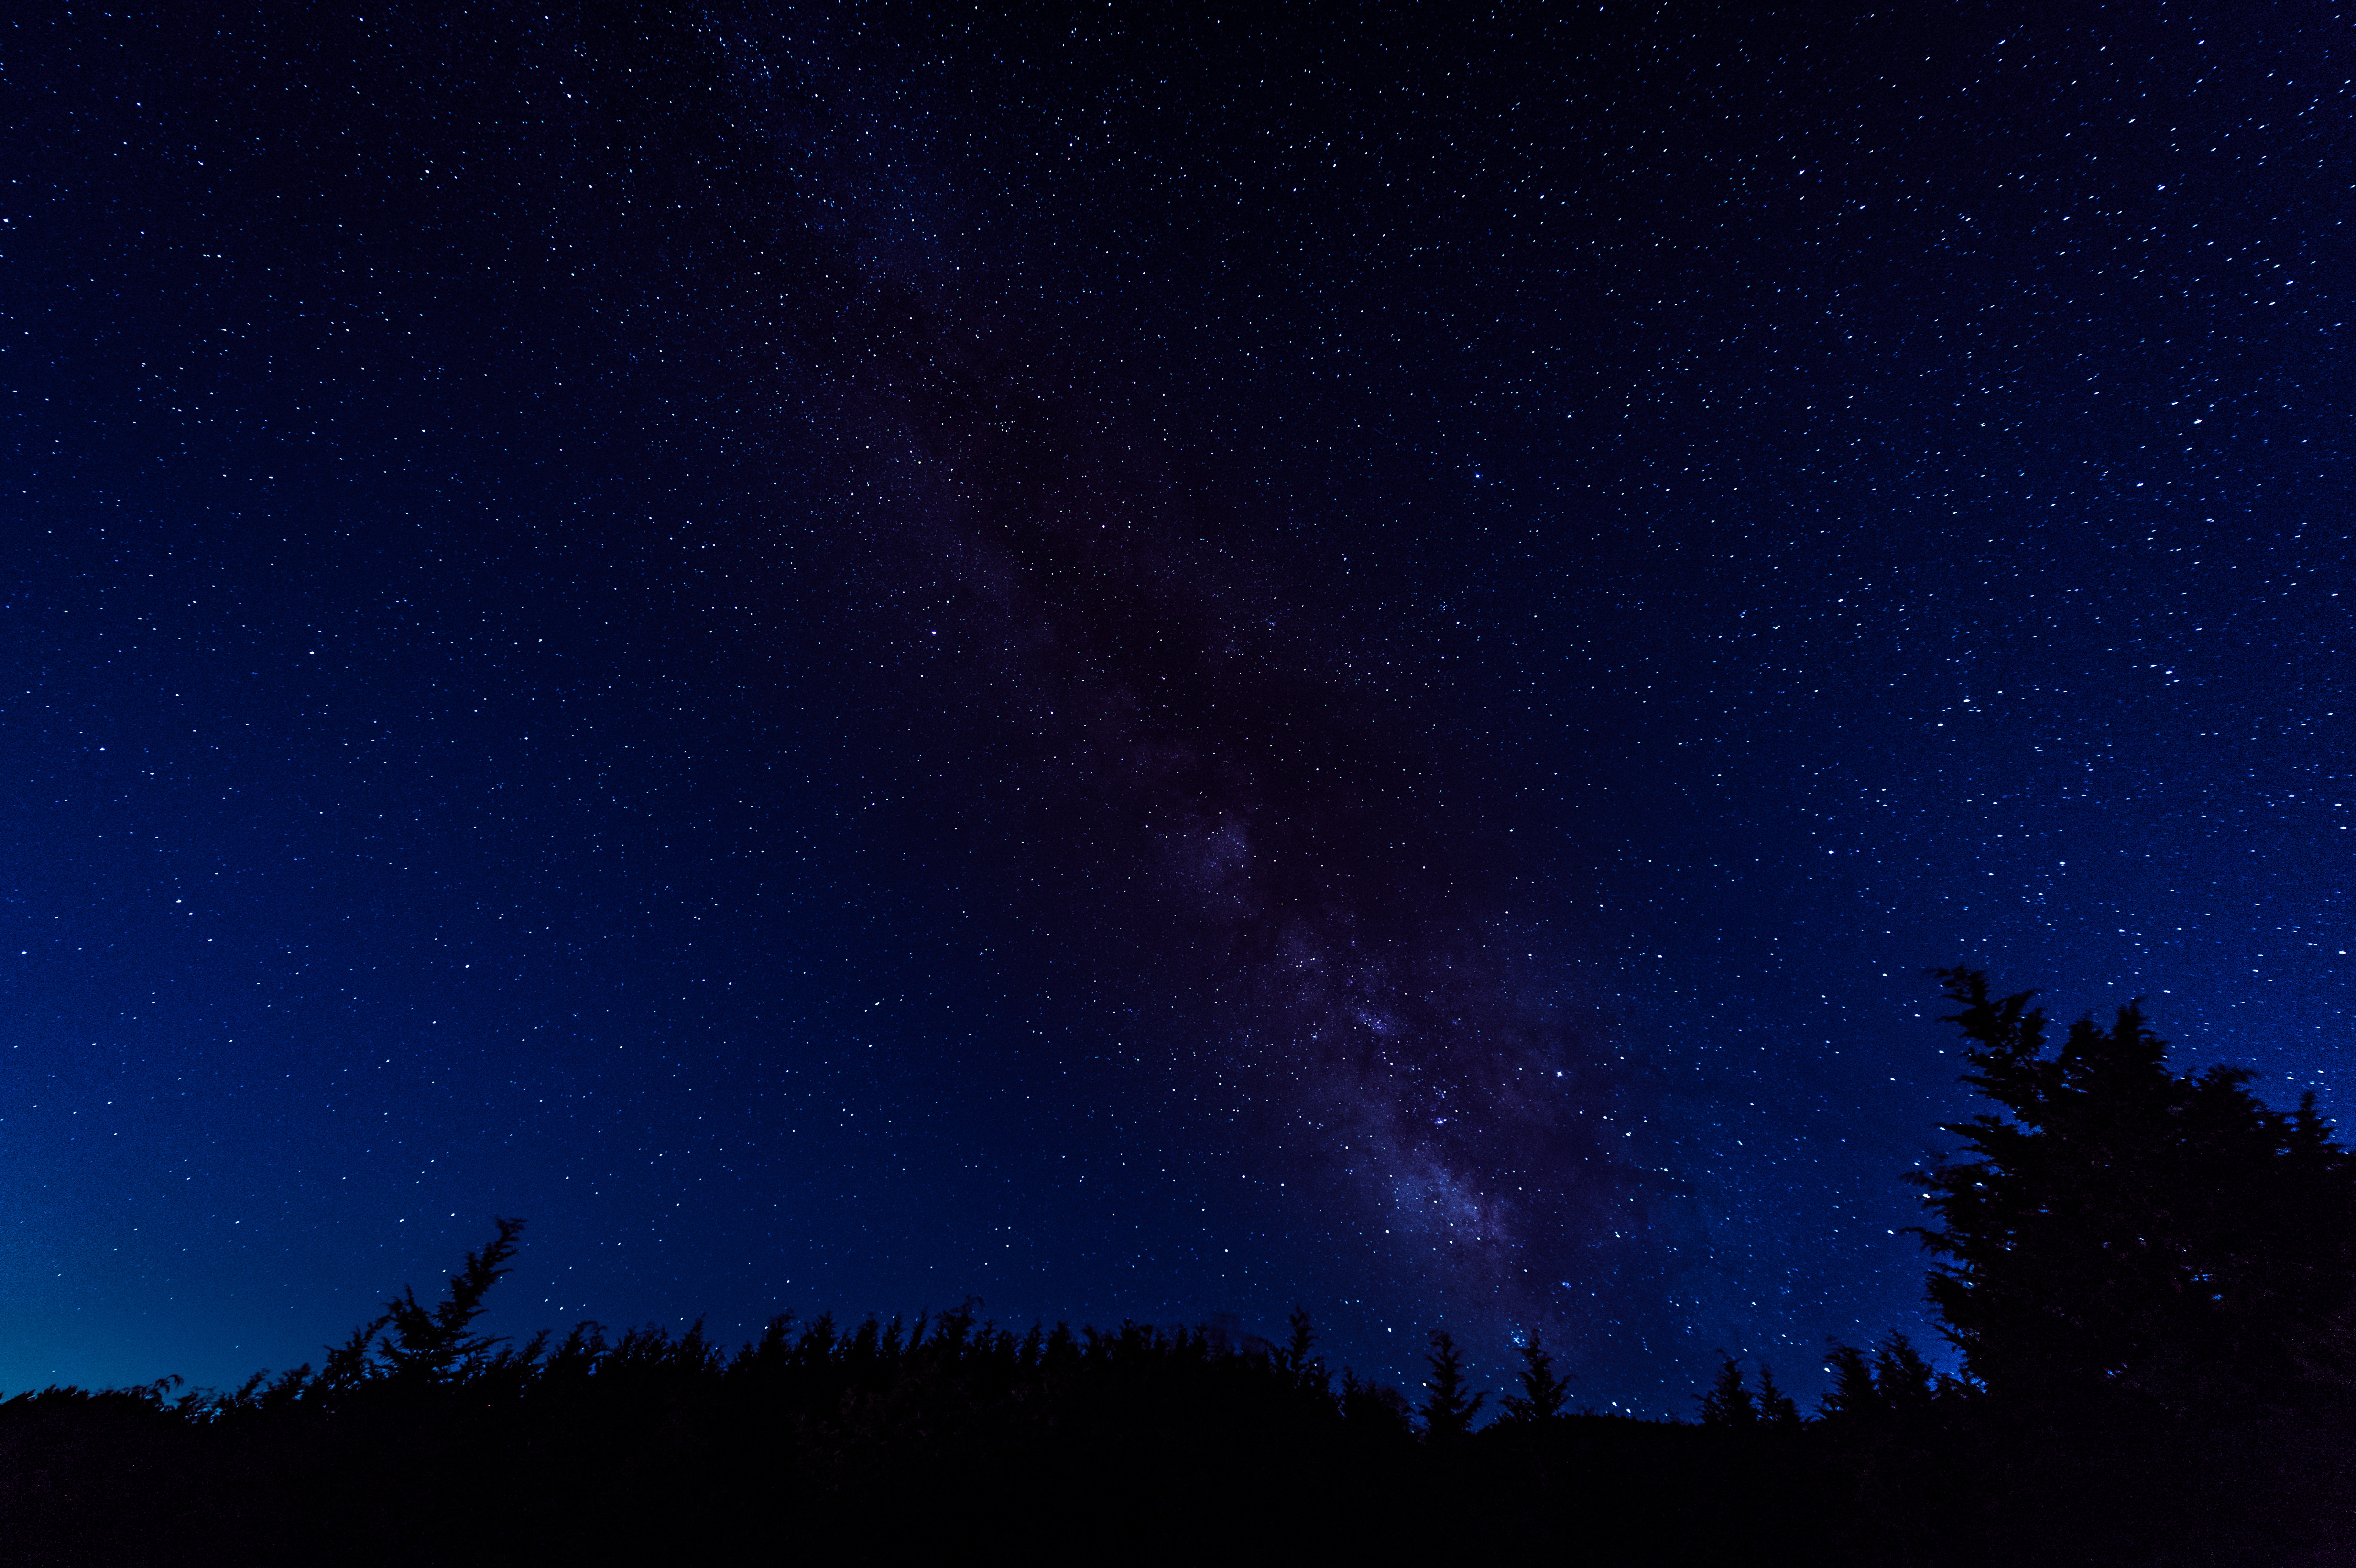 夜空いっぱいの星空 鏡野町笠菅峠 の無料の写真素材 フリー素材 をダウンロード ぱくたそ